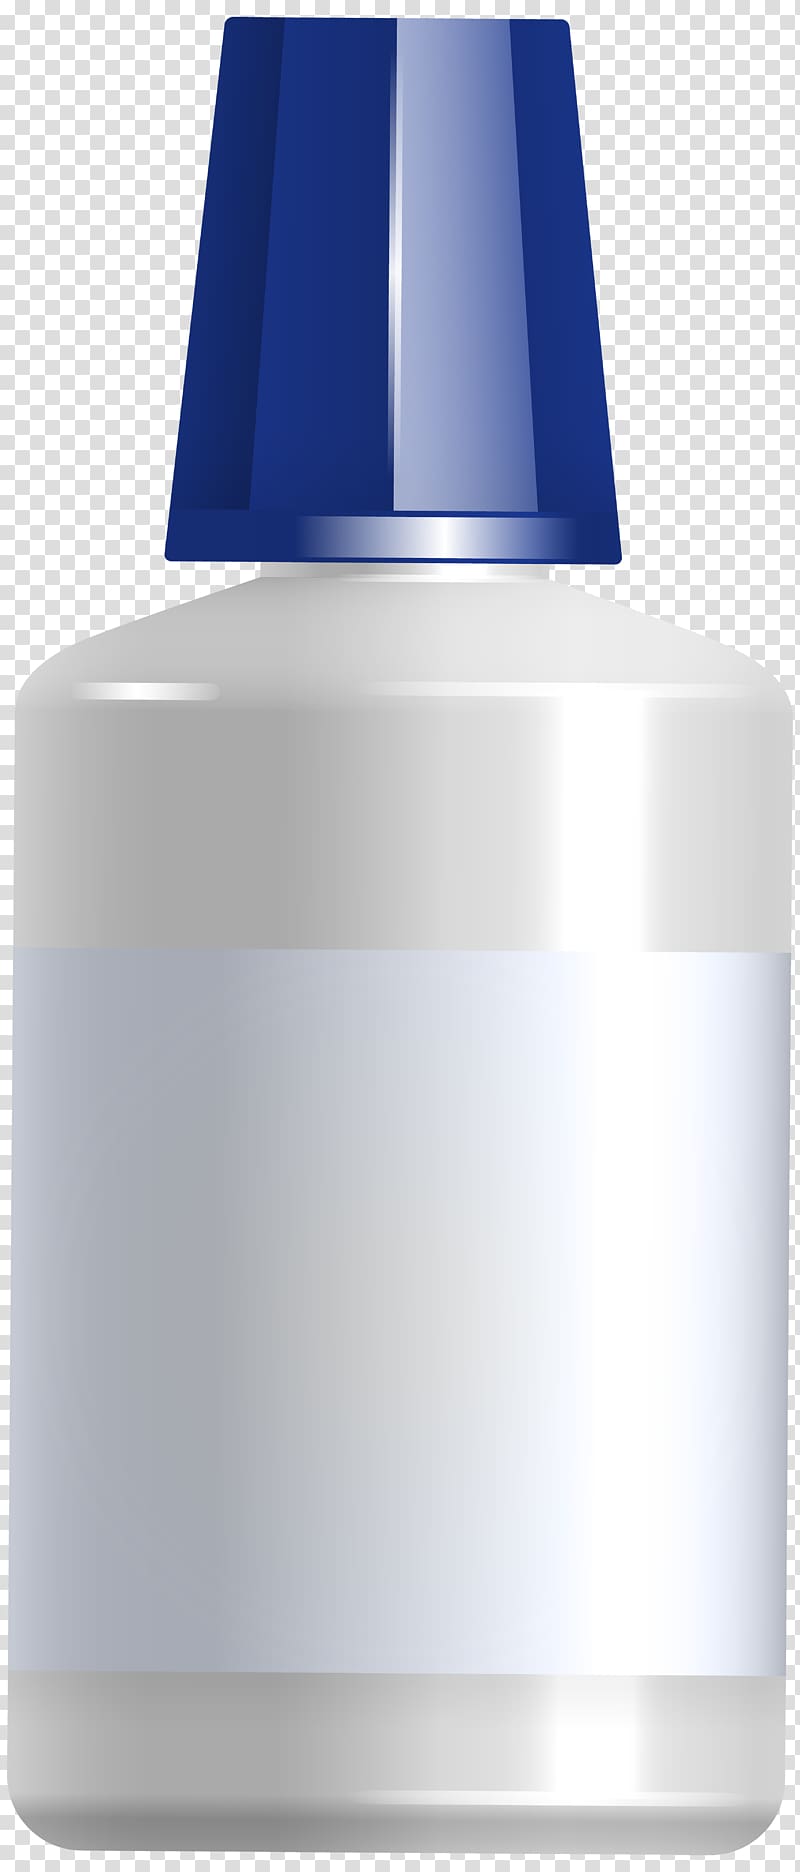 Liquid Cosmetics Bottle, Glue Bottle transparent background PNG clipart